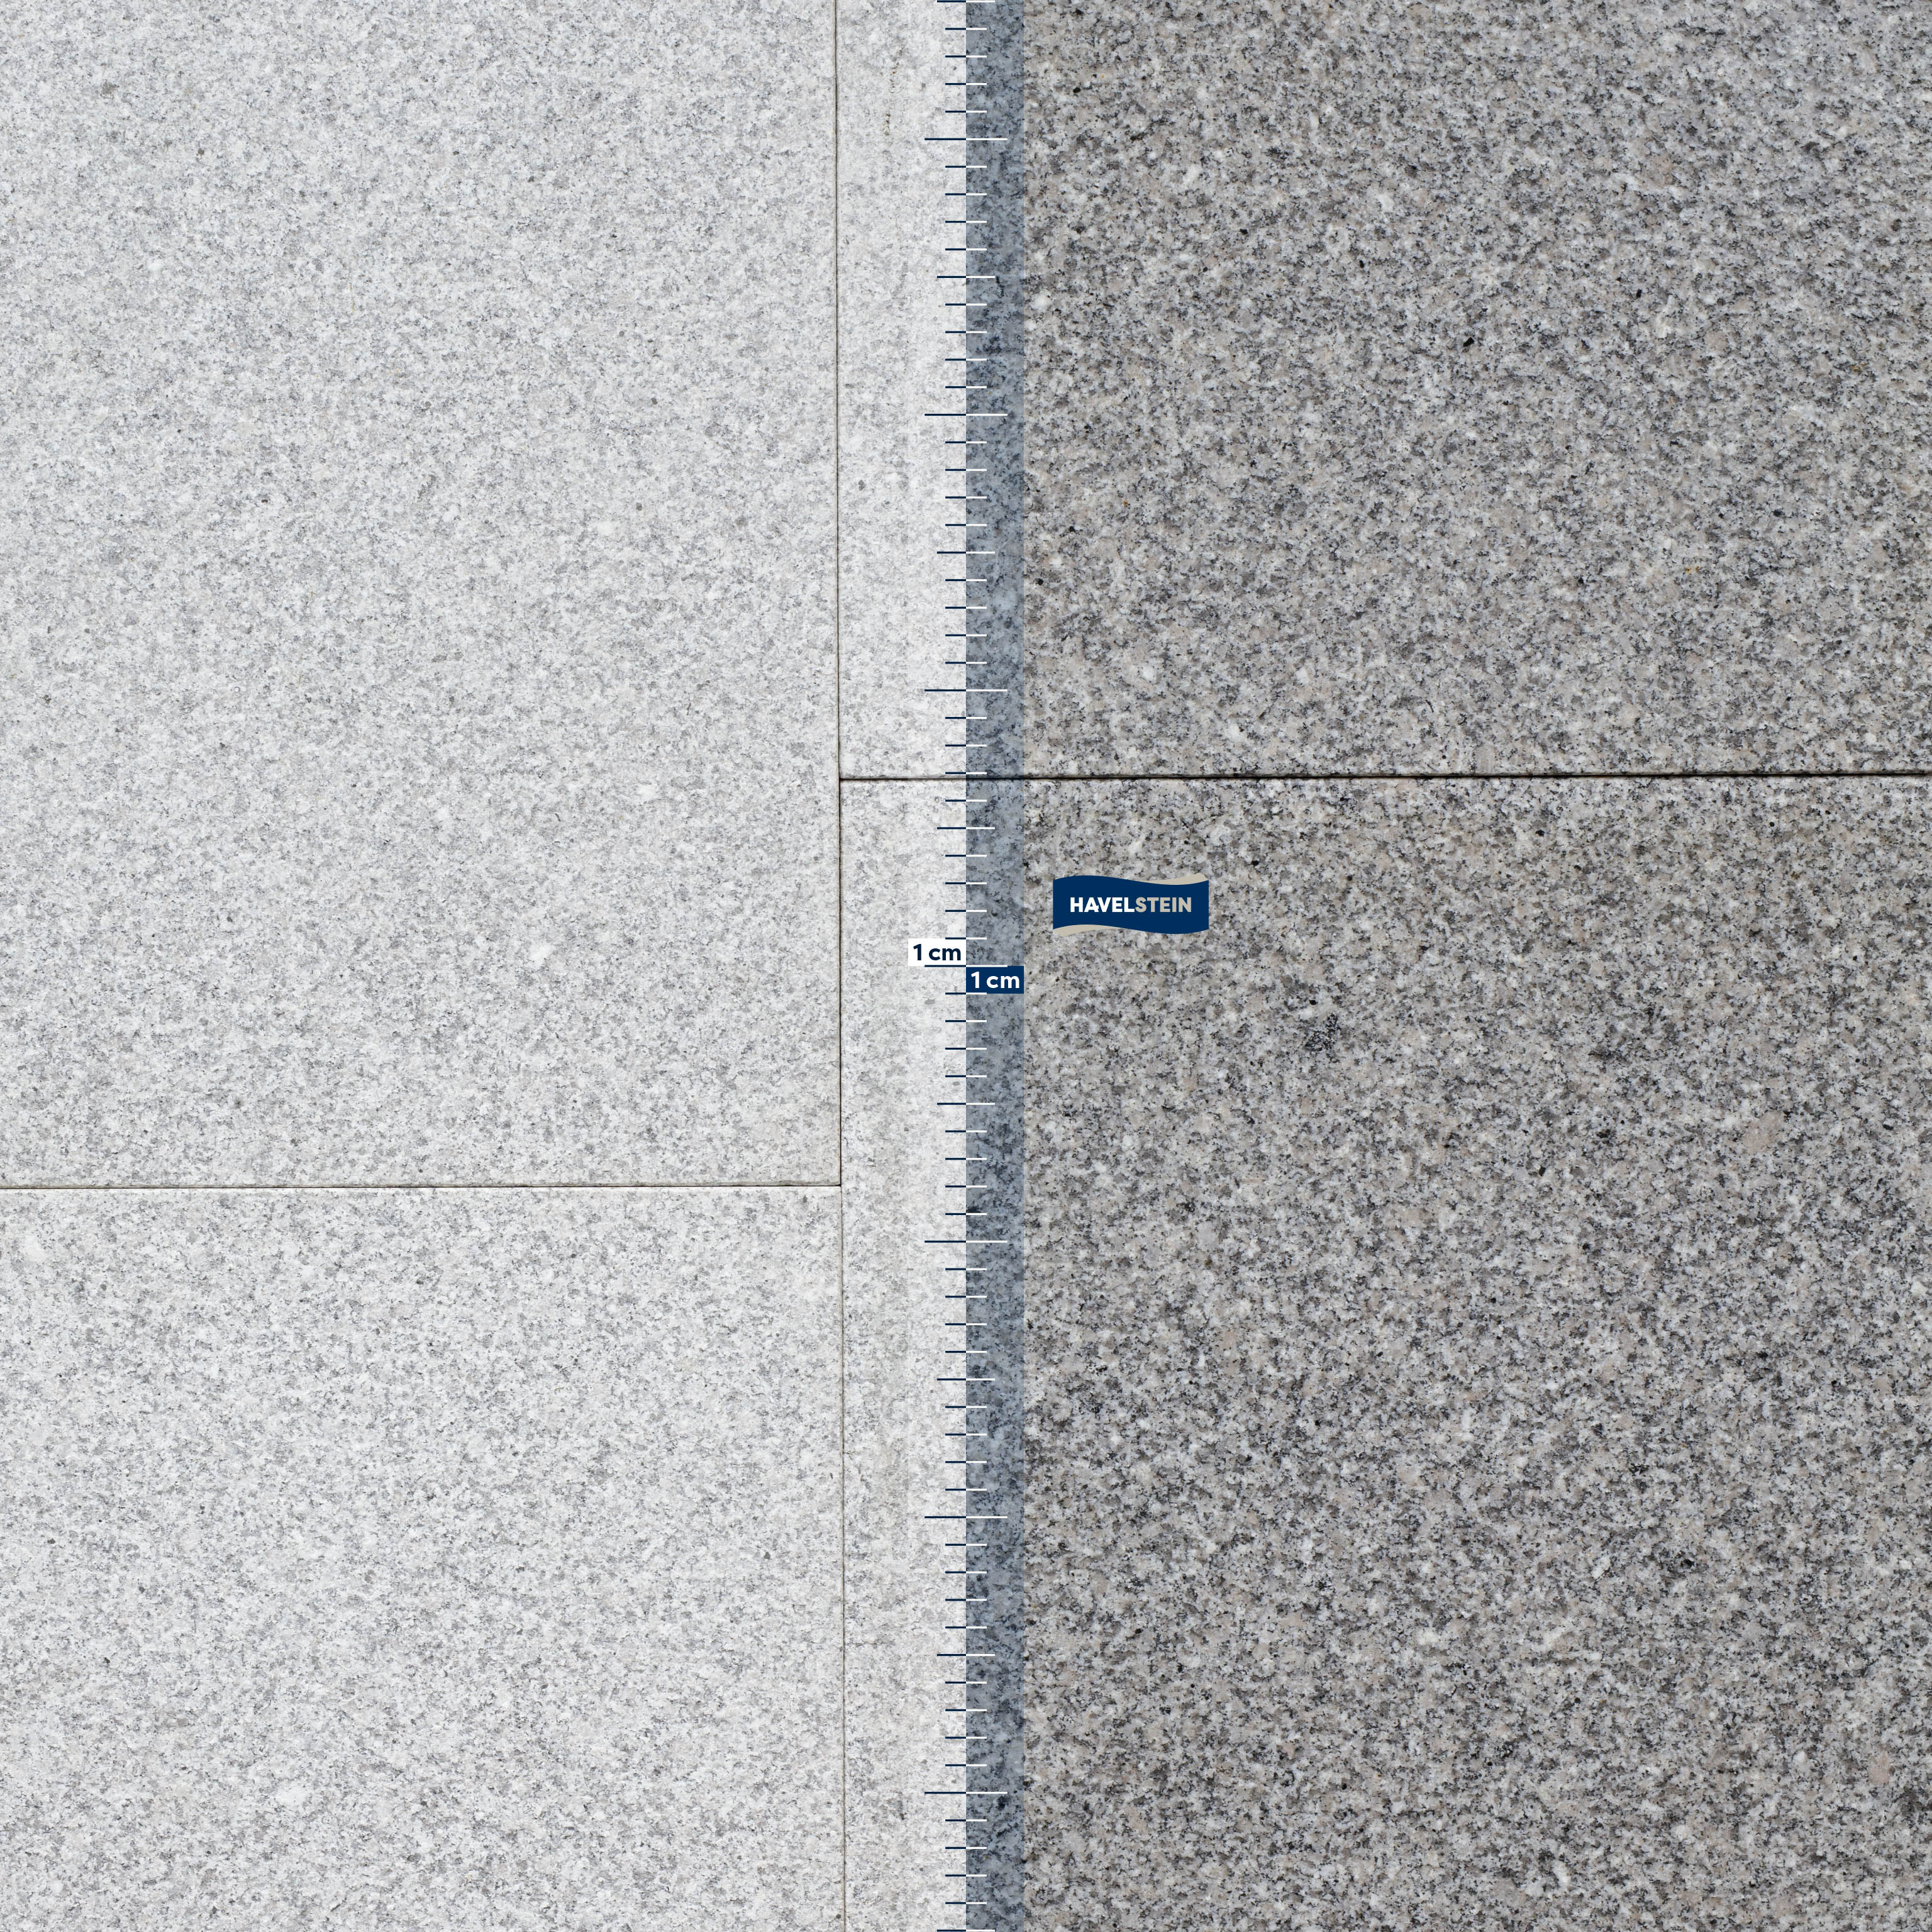 Terrassenplatten, Granit grau (Pina) geflammt, Granit Platte, 60 x 40 x 3 cm, G603, grau, Oberfläche gesägt und geflammt